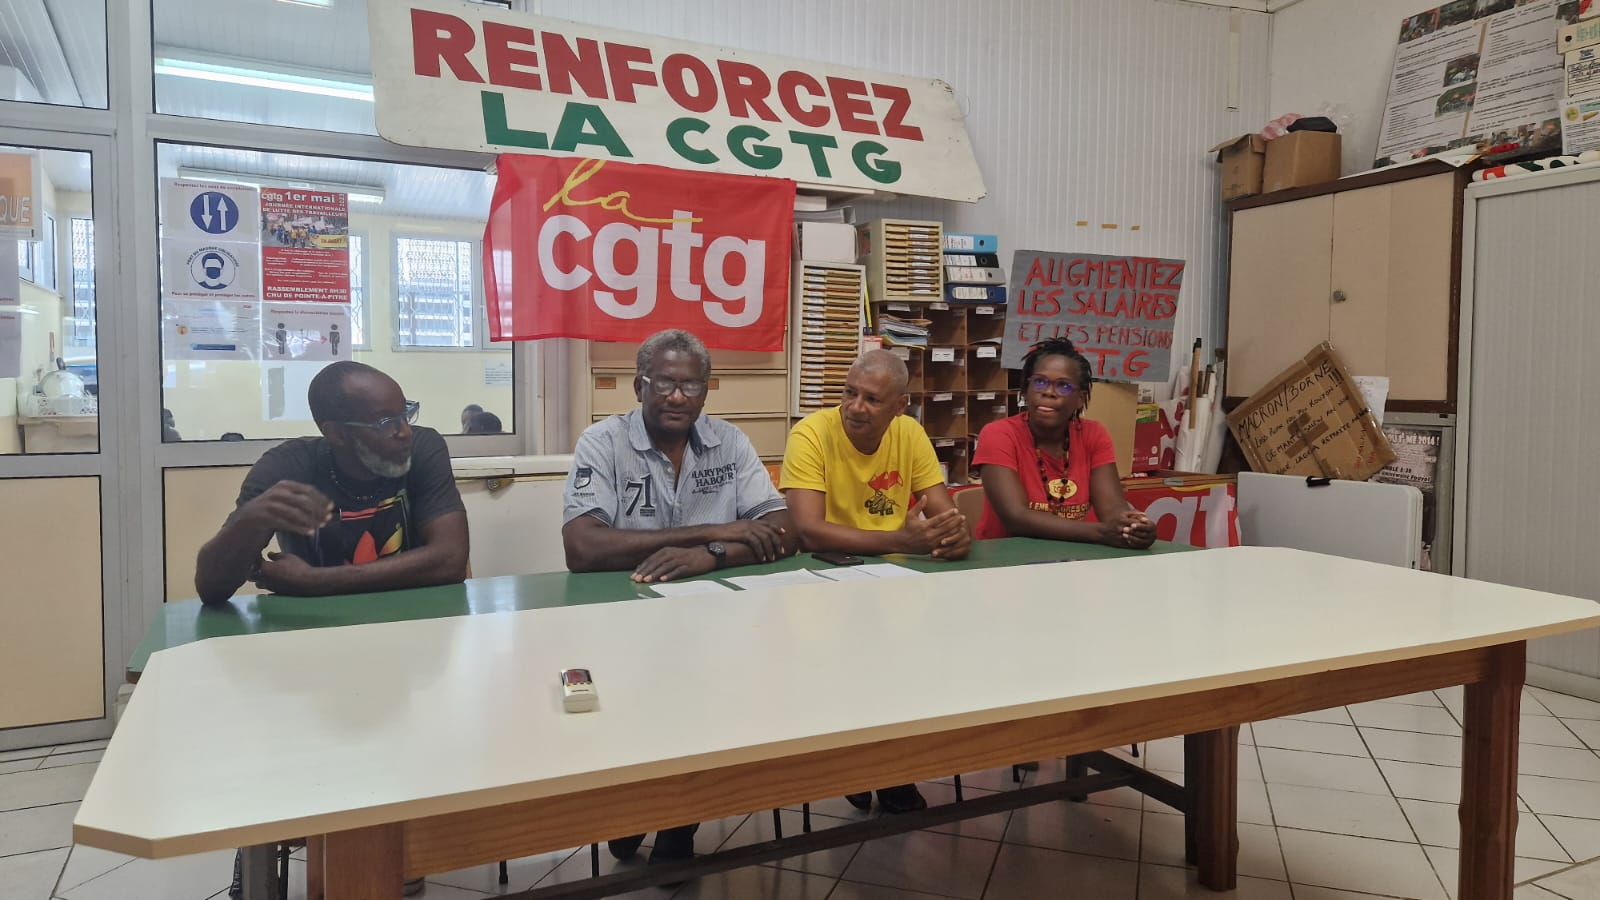     La CGTG réaffirme son soutien aux travailleurs Guadeloupéens

